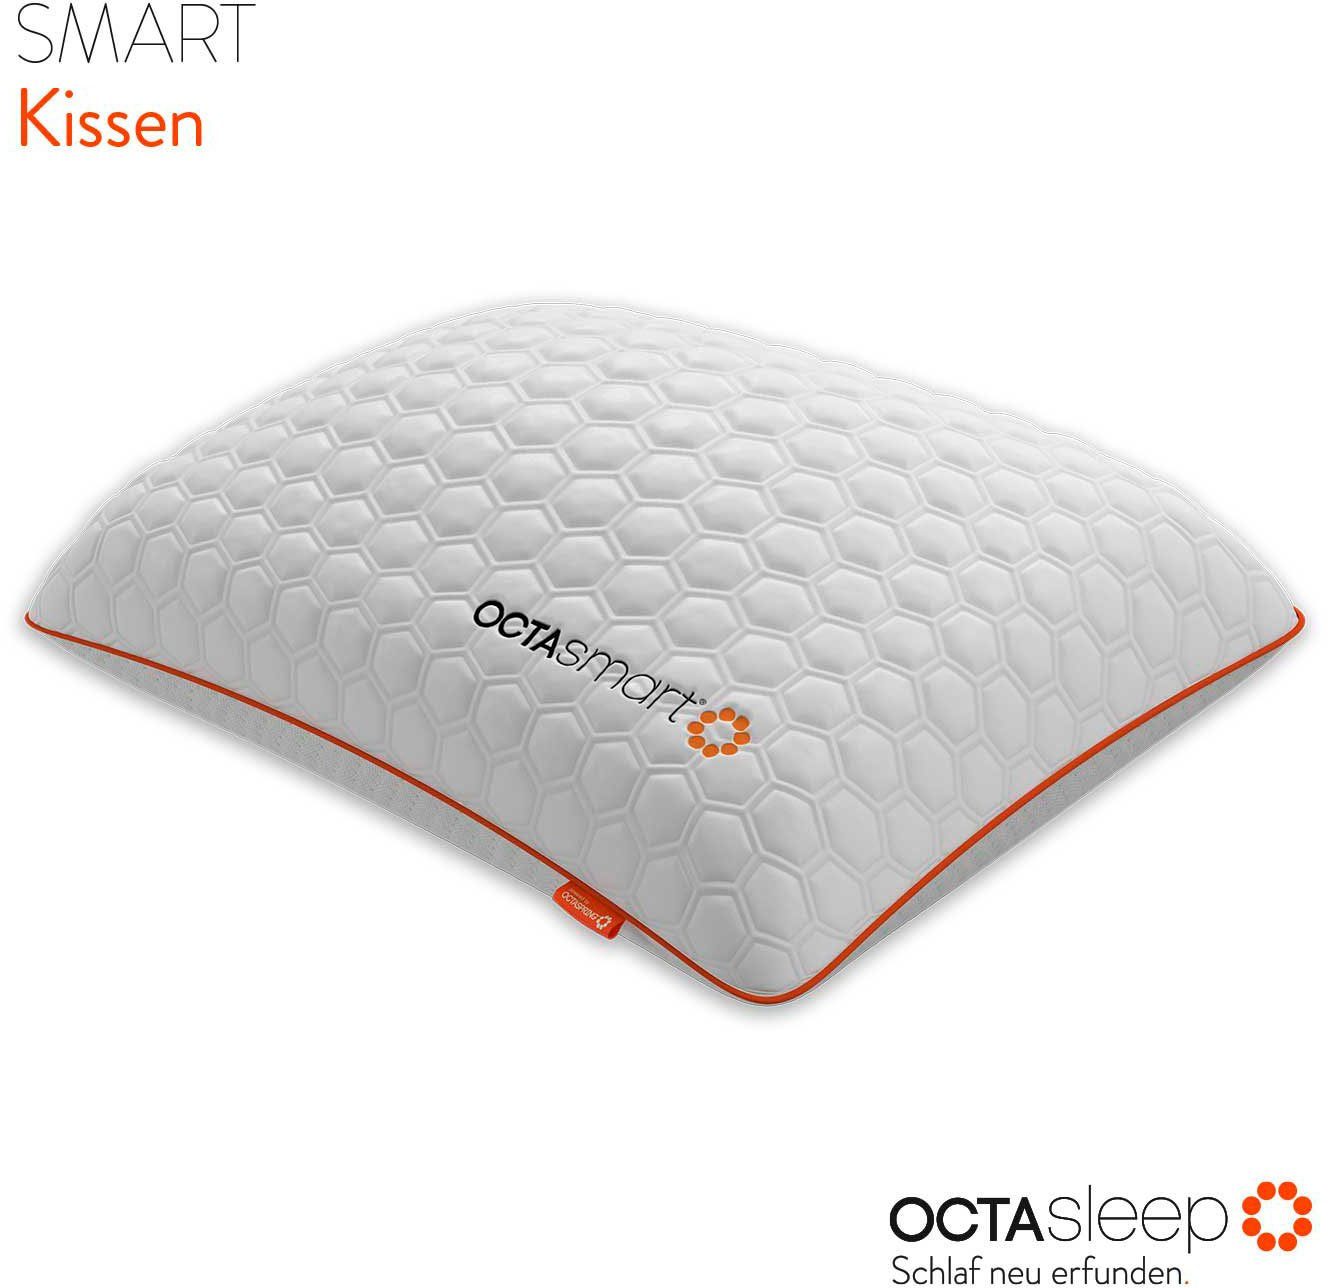 Nackenstützkissen Octasleep Smart Pillow, OCTAsleep, Füllung: 100% Polyester, Bezug: 99% Polyester, 1% Elasthan, Bauchschläfer, Rückenschläfer, Seitenschläfer, Kopfkissen atmungsaktiv